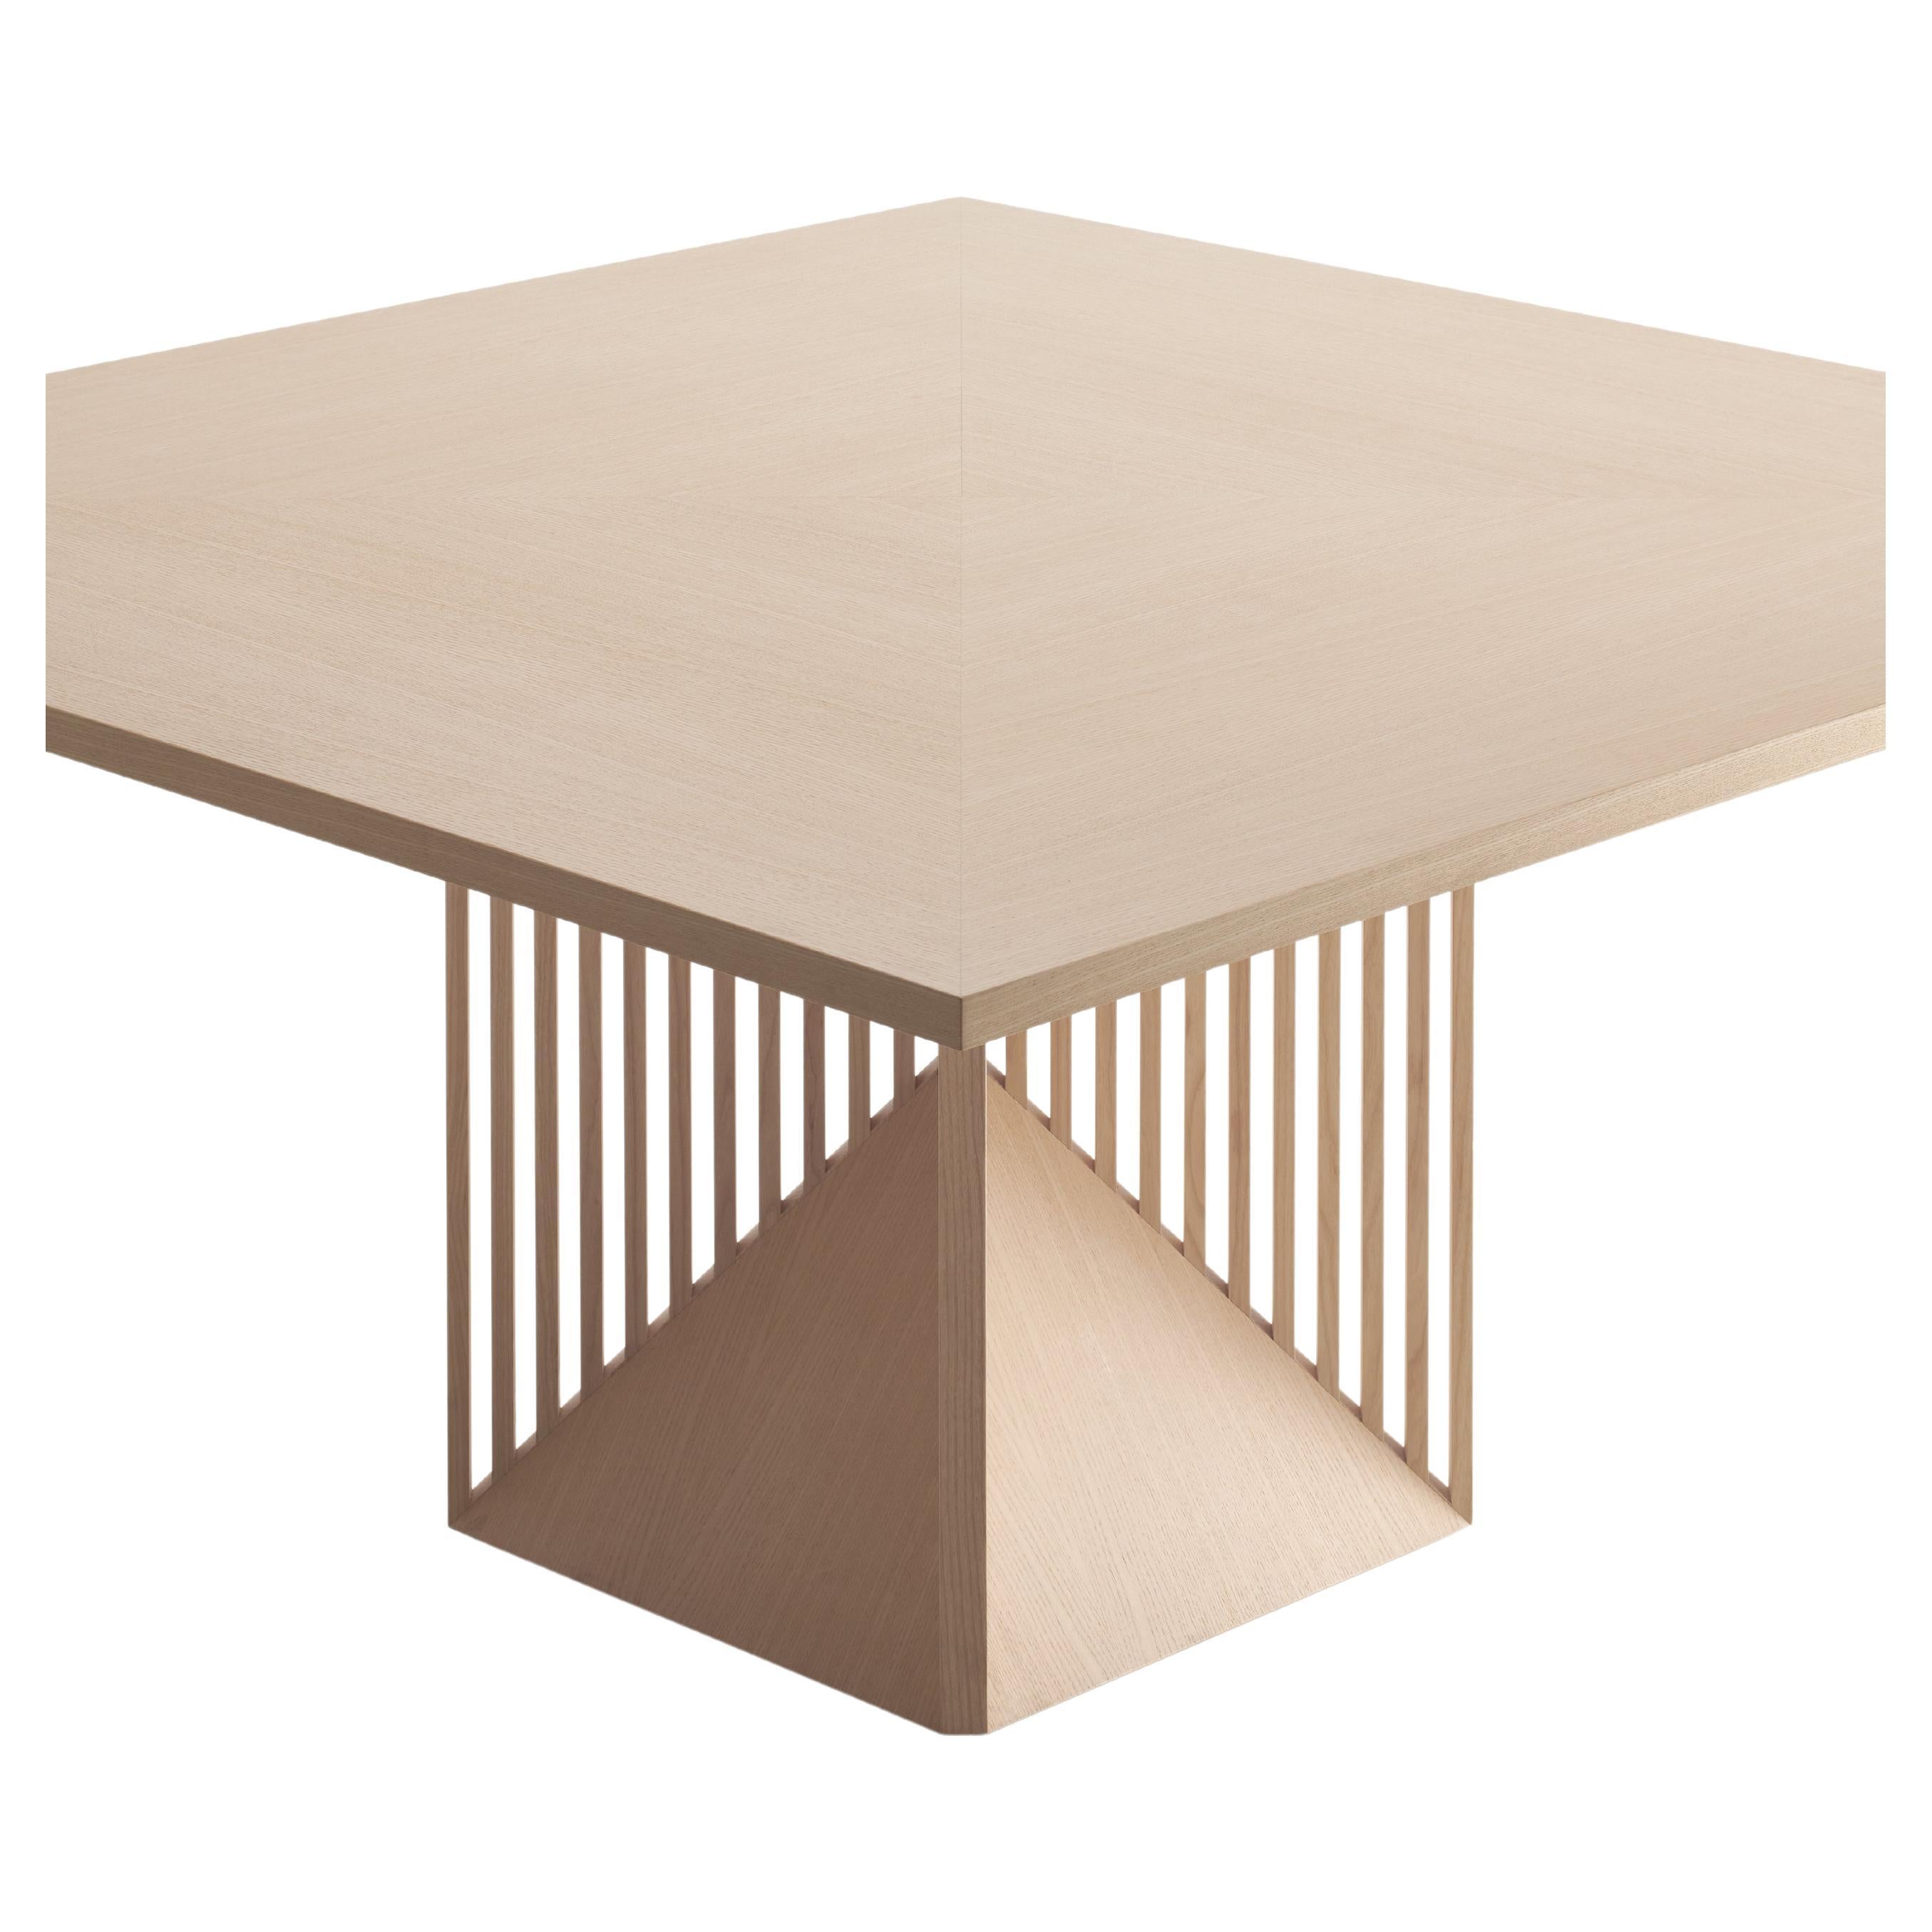 Créée à la fin des années 1990 par l'architecte Gianfranco Frattini, la table Maestro allie vision du design et excellence du savoir faire de l'ébénisterie italienne. Le bois est le matériau préféré de Frattini et révèle sa passion à travers tous